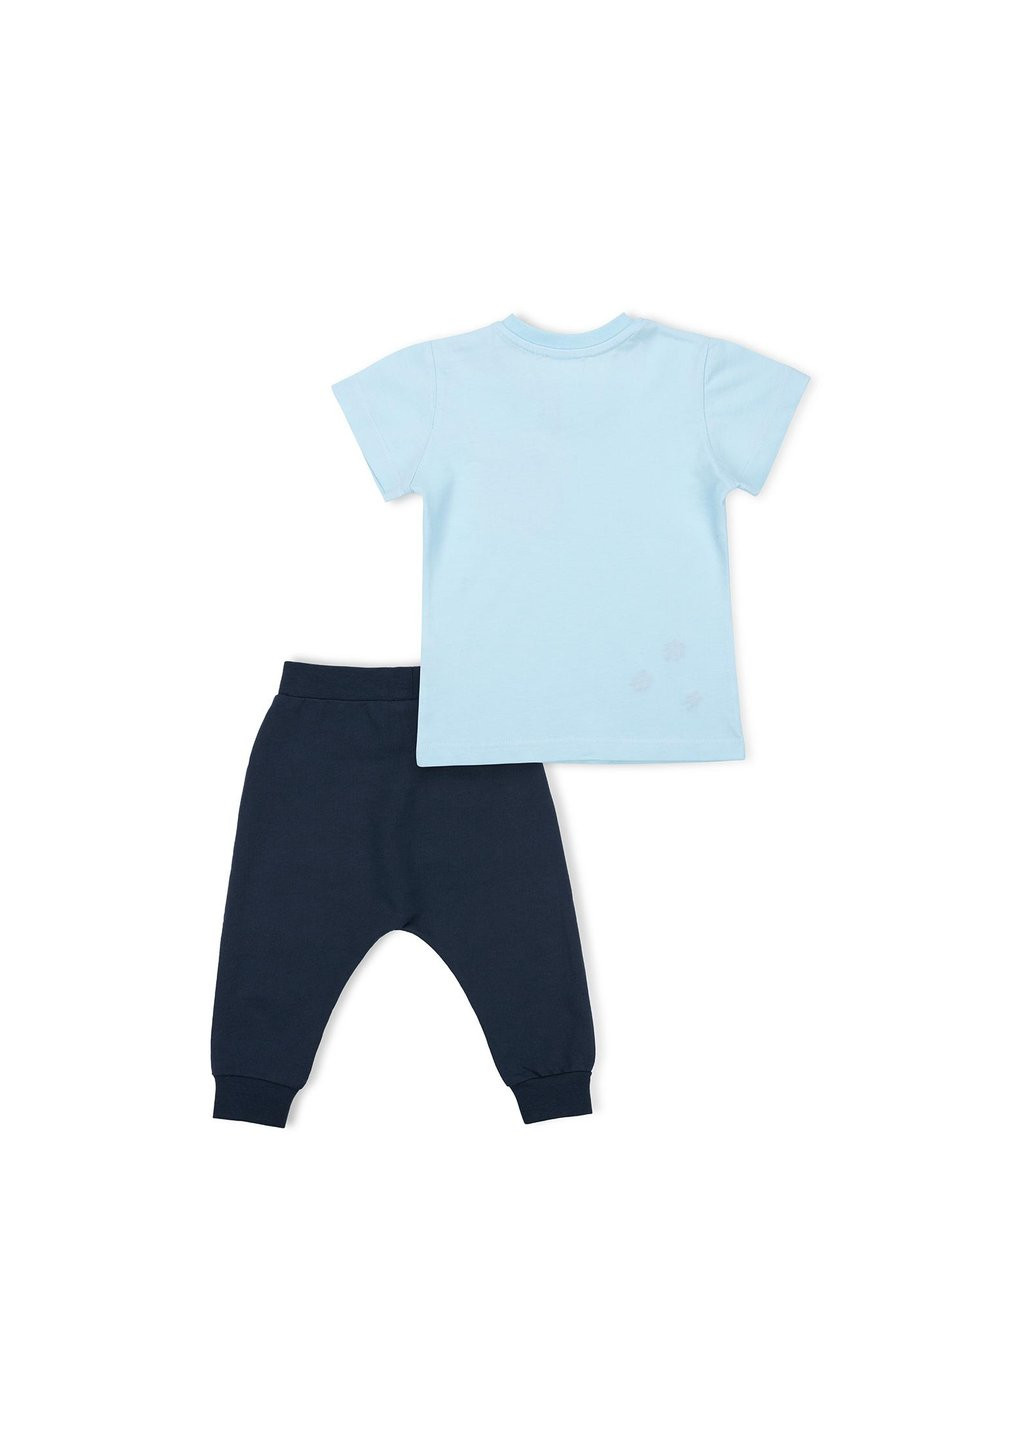 Комбинированный демисезонный набор детской одежды с карманчиками (10234-80g-blue) Breeze